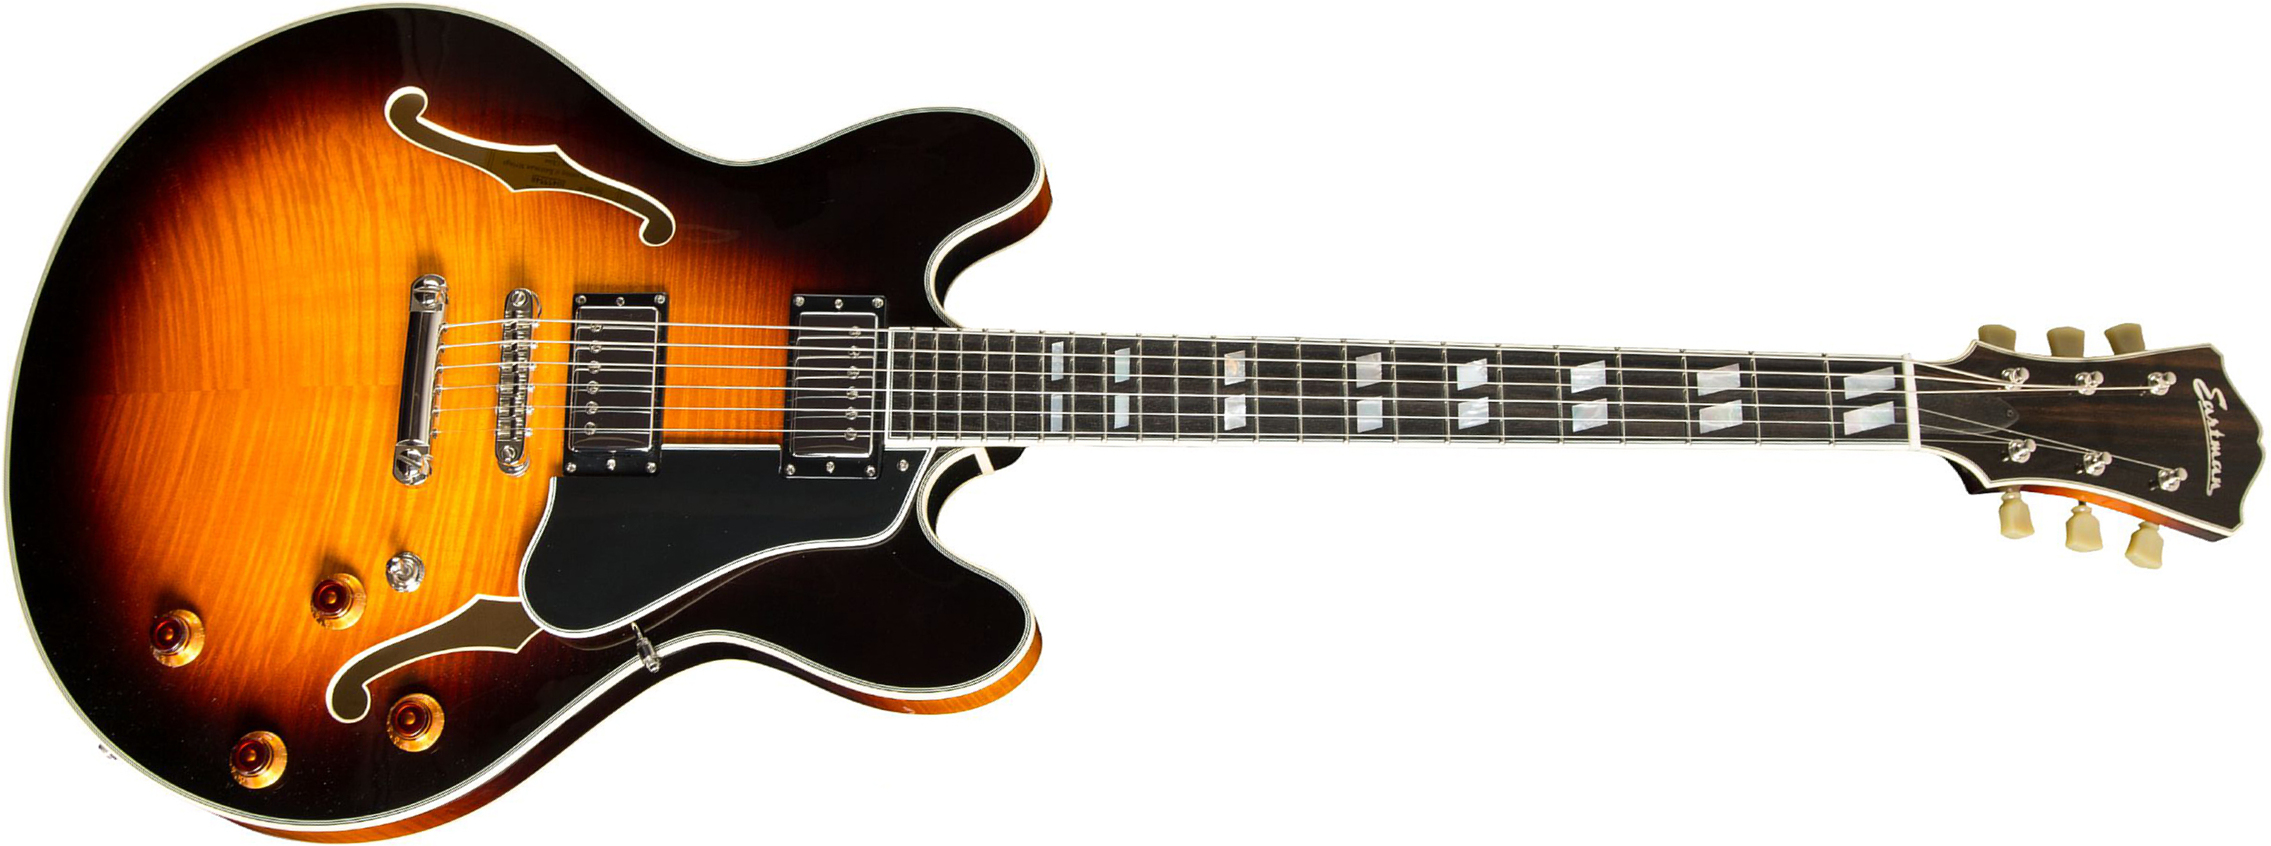 Eastman T486 Thinline Laminate Tout Erable Hh Seymour Duncan Ht Eb - Sunburst - Semi-Hollow E-Gitarre - Main picture